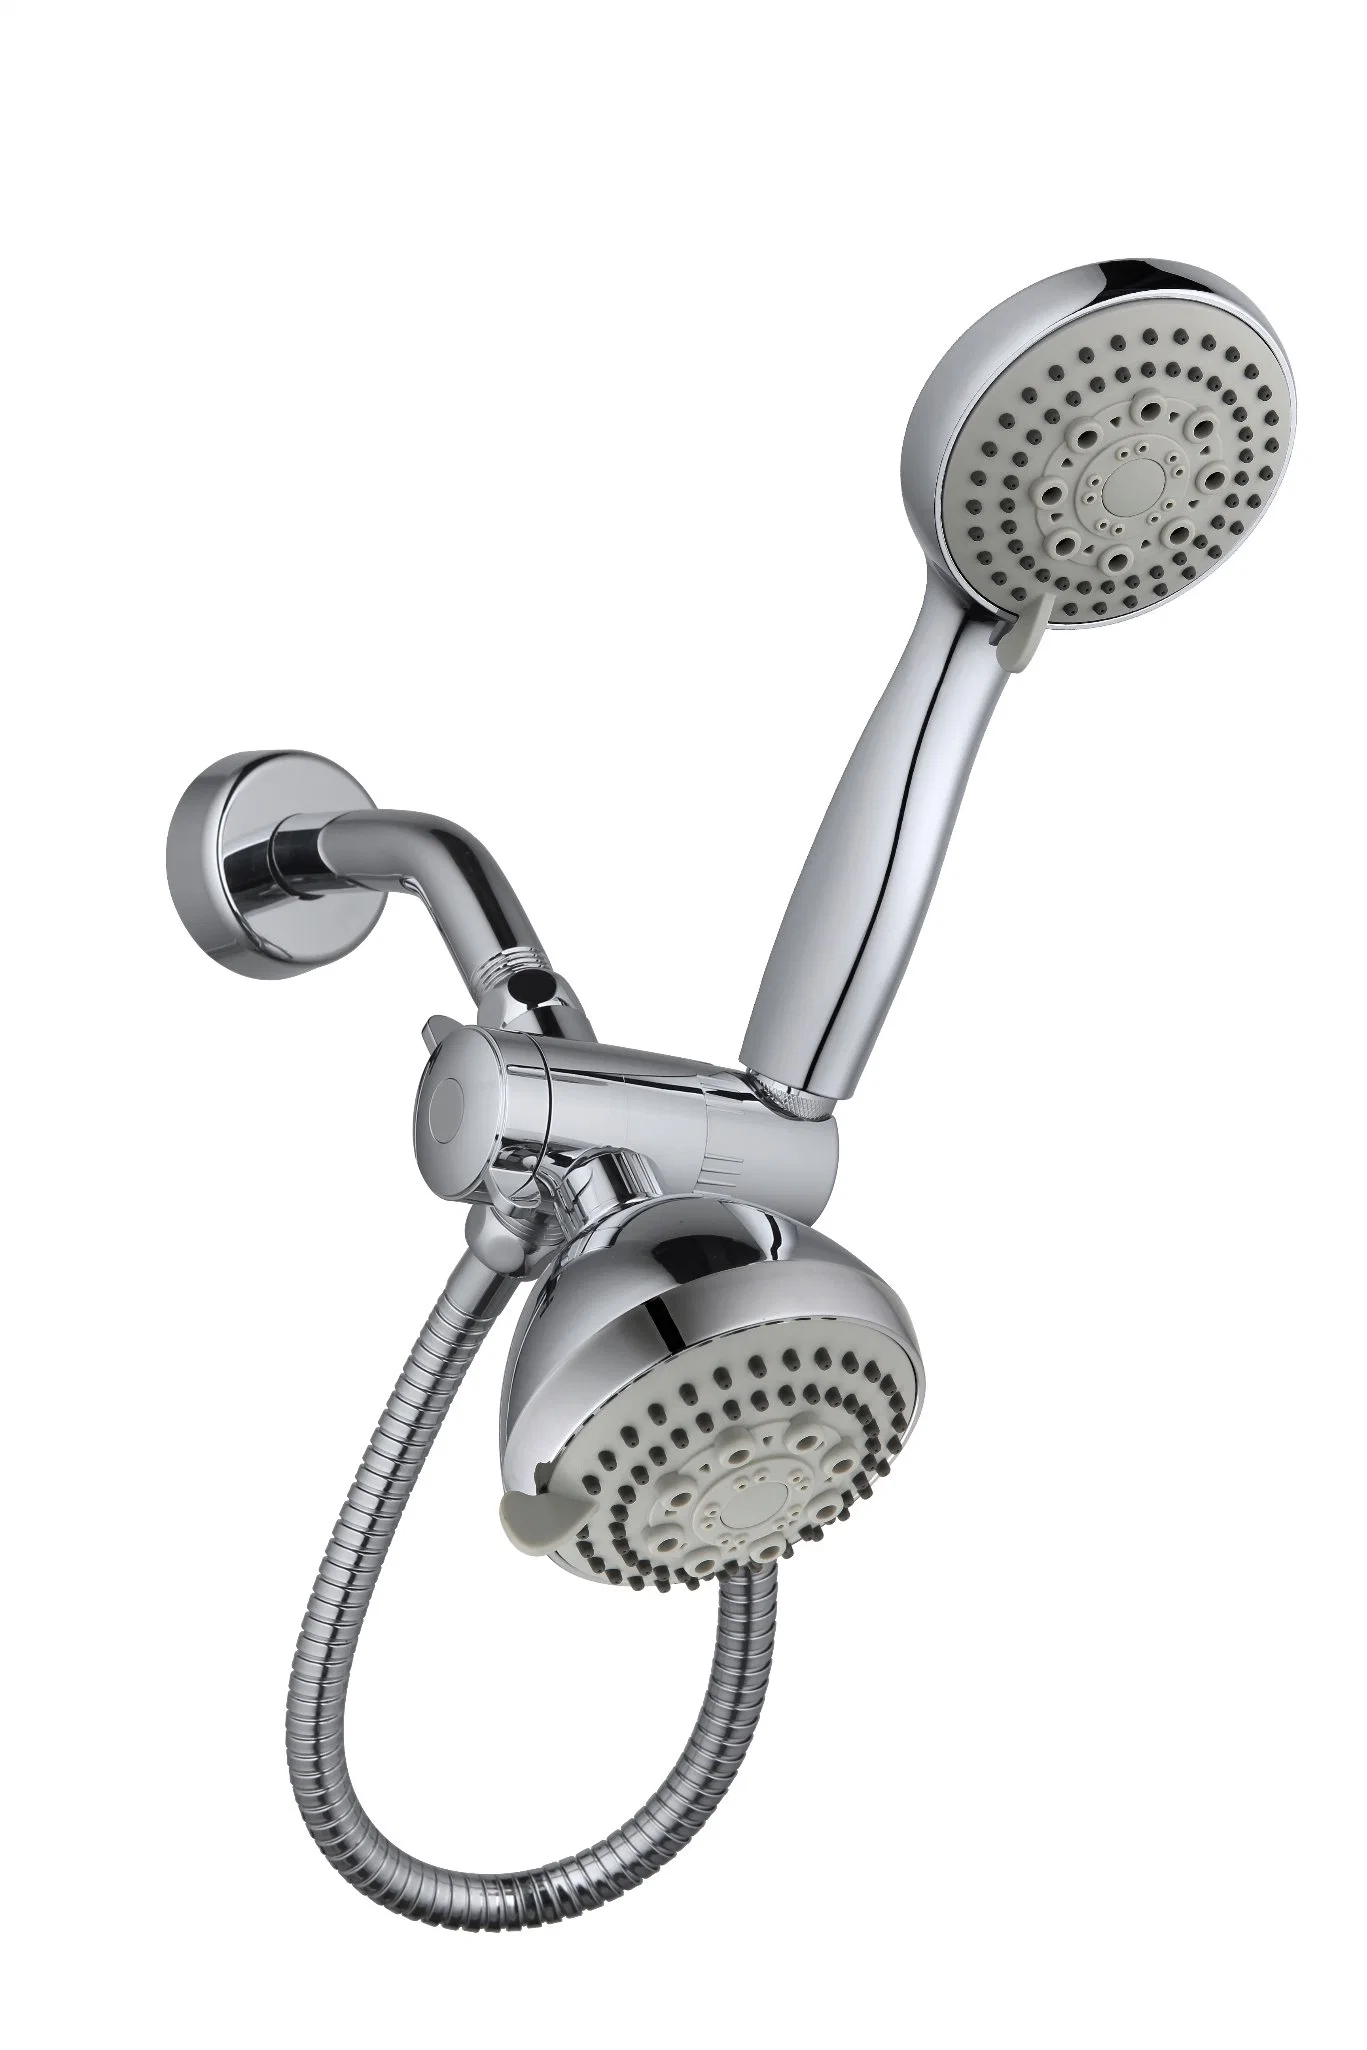 Acessórios de banho Hotelspa Chuveiro com 5 Funções Chuveiro e chuveiro de mão, ajuste o braço de chuveiro de metal, 3E55003 de desvio de função